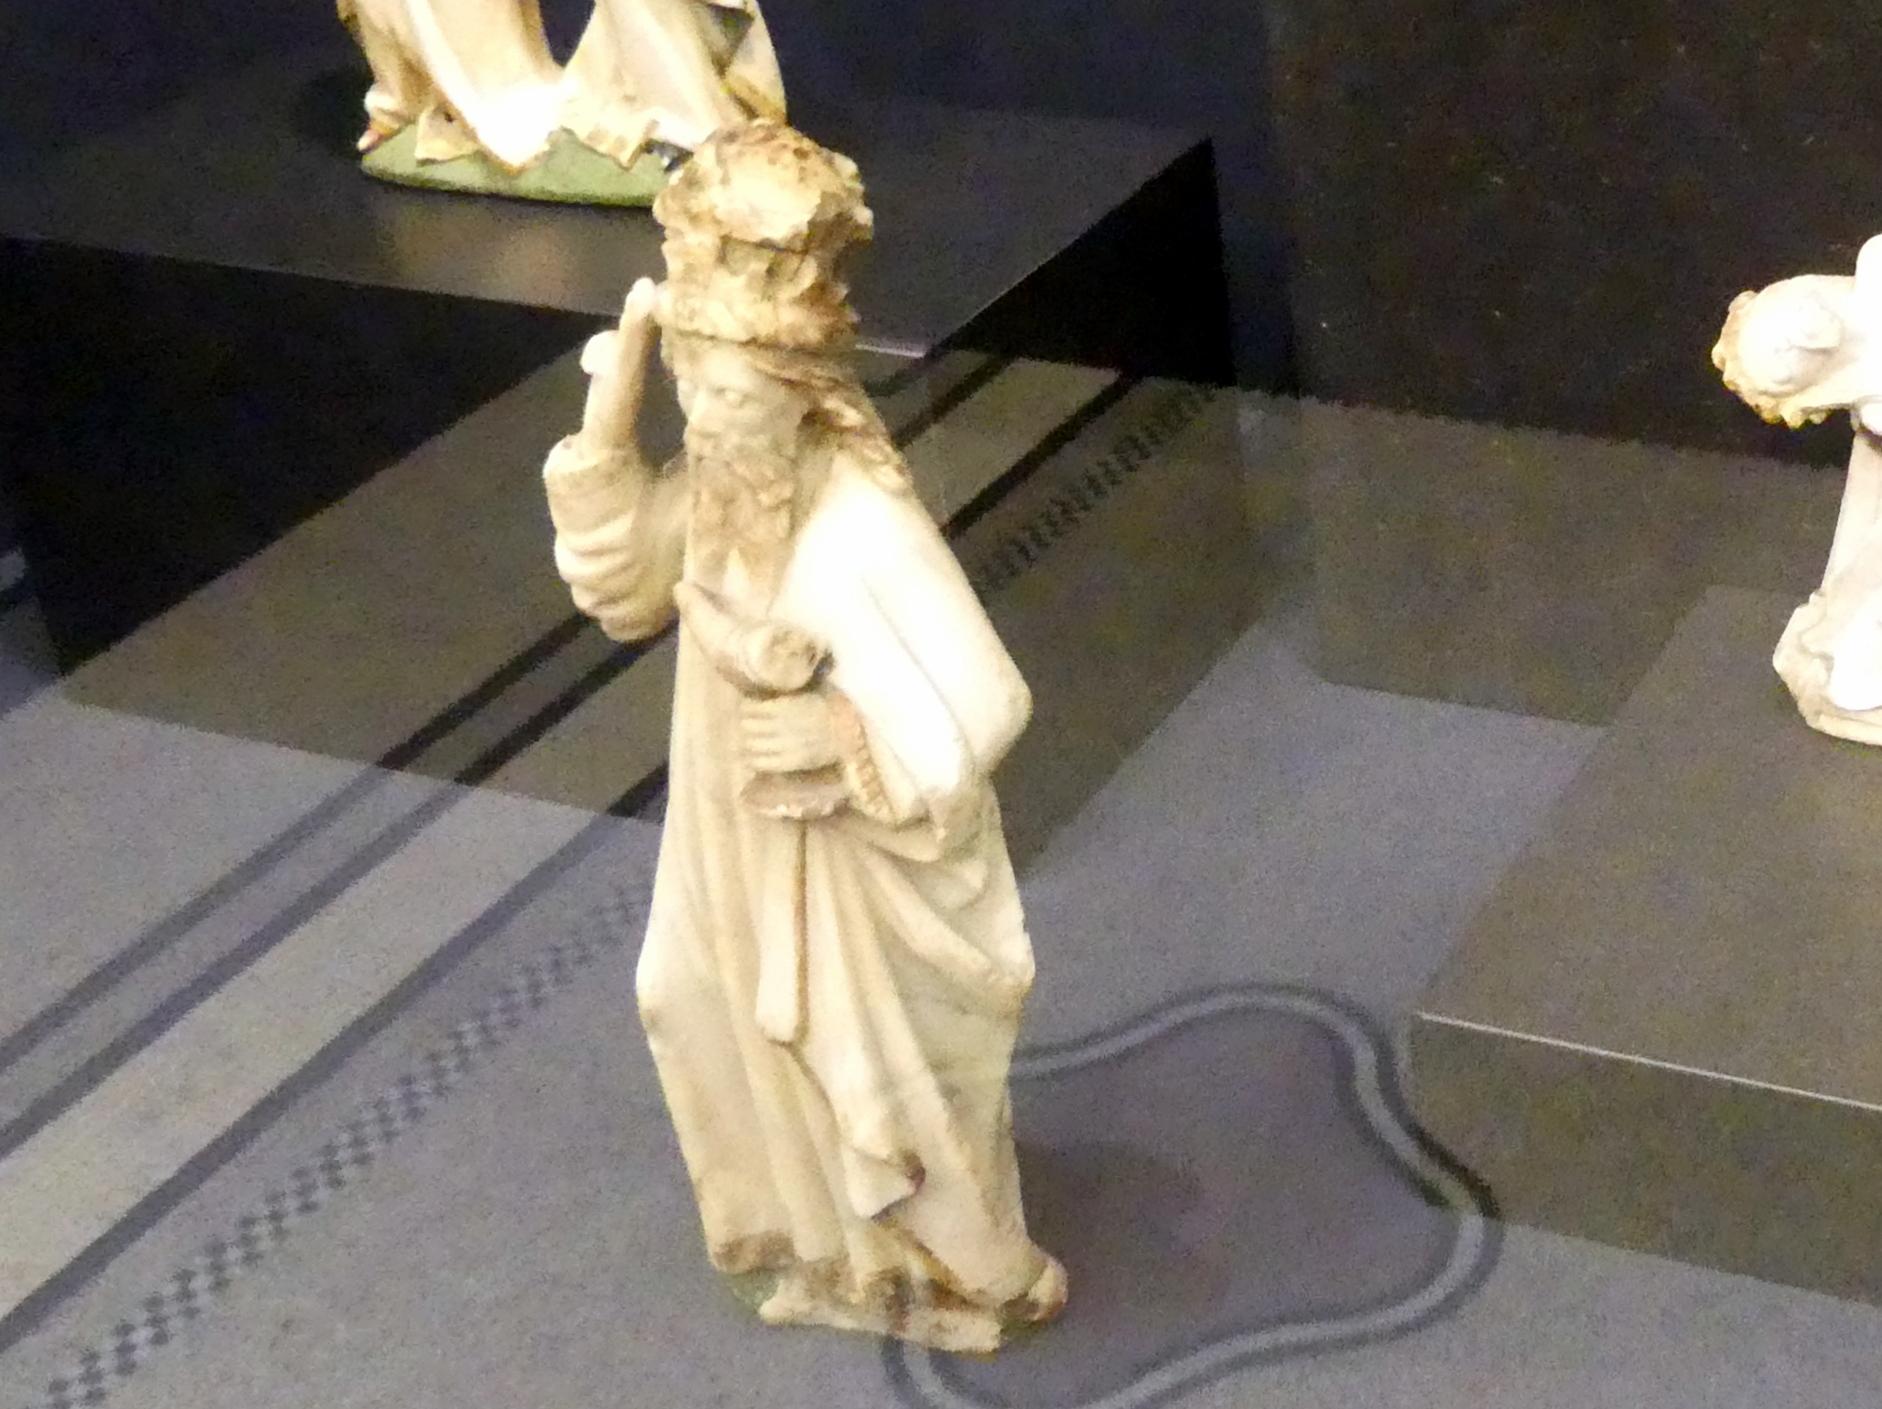 Heiliger König einer Anbetung, Frankfurt am Main, Liebieghaus Skulpturensammlung, Mittelalter 3 - große Kunst im kleinen Format, um 1450–1460, Bild 2/3